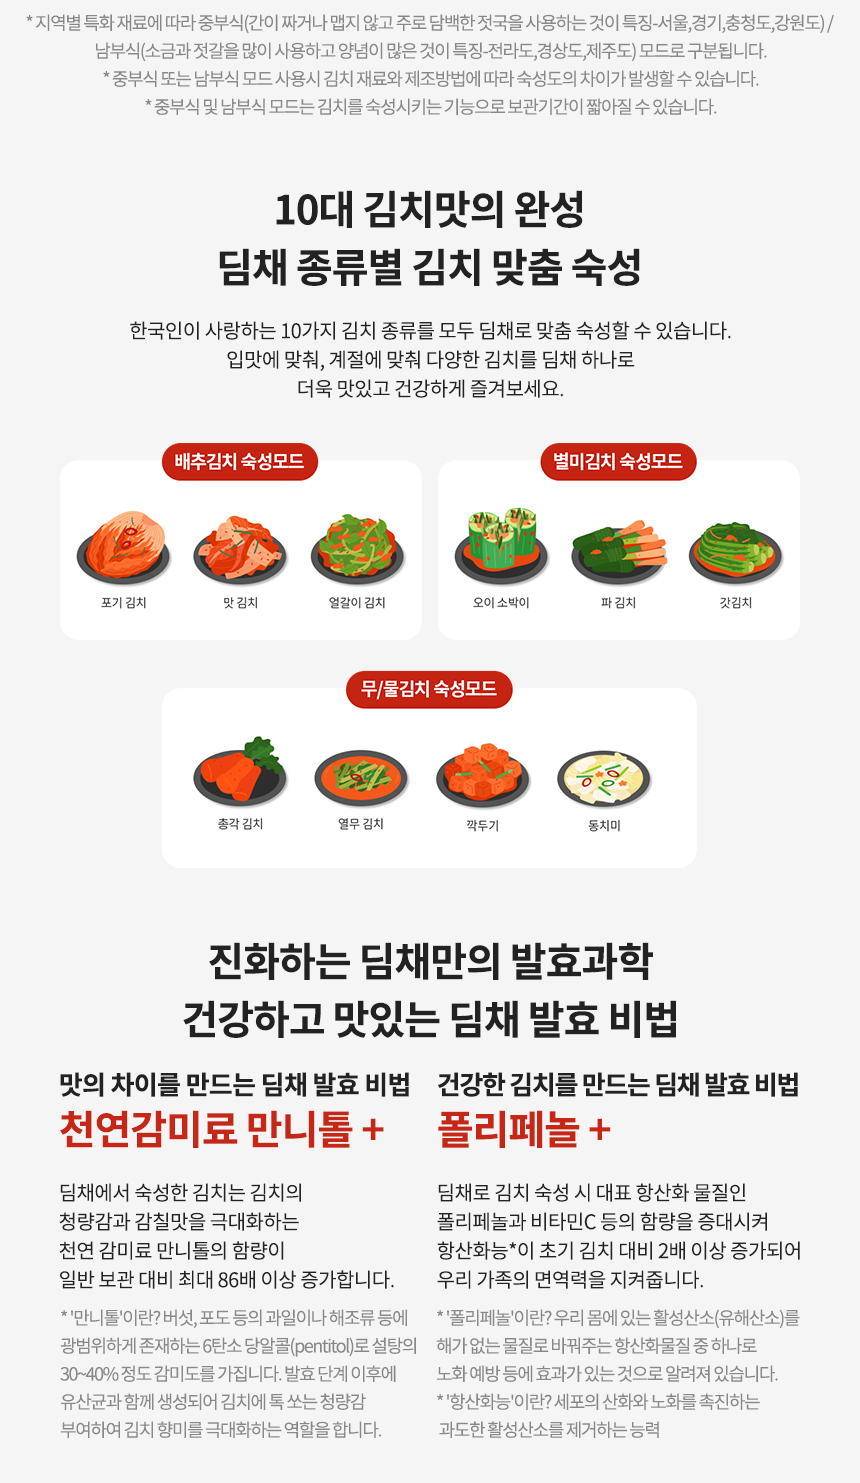 10대 김치맛의 완성 딤채 종류별 김치 맞춤 숙성 한국인이 사랑하는 10가지 김치 종류를 모두 딤채로 맞춤 숙성할 수 있습니다. 입맛에 맞춰, 계절에 맞춰 다양한 김치를 딤채 하나로 더욱 맛있고 건강하게 즐겨보세요.